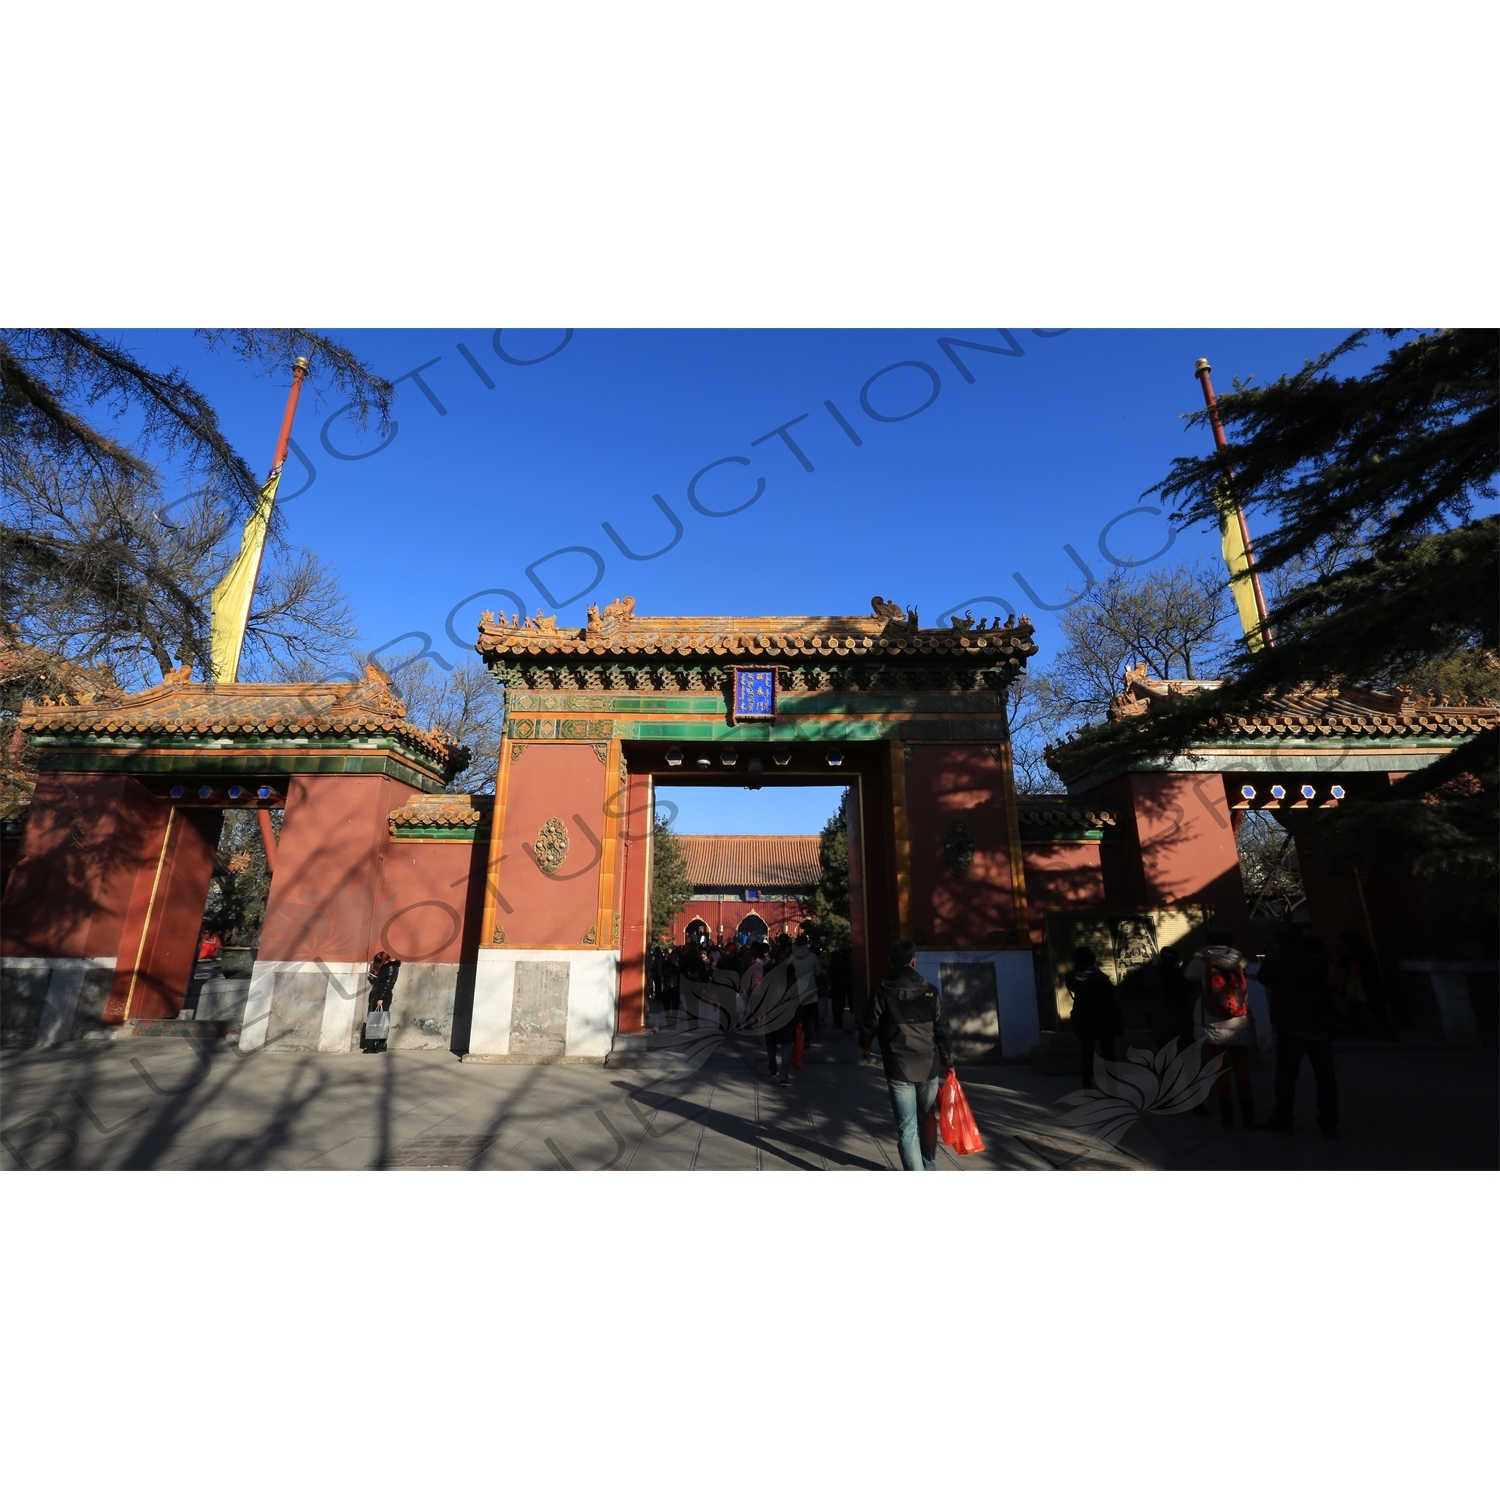 Gate of Peace Declaration (Zhaotai Men) in the Lama Temple in Beijing